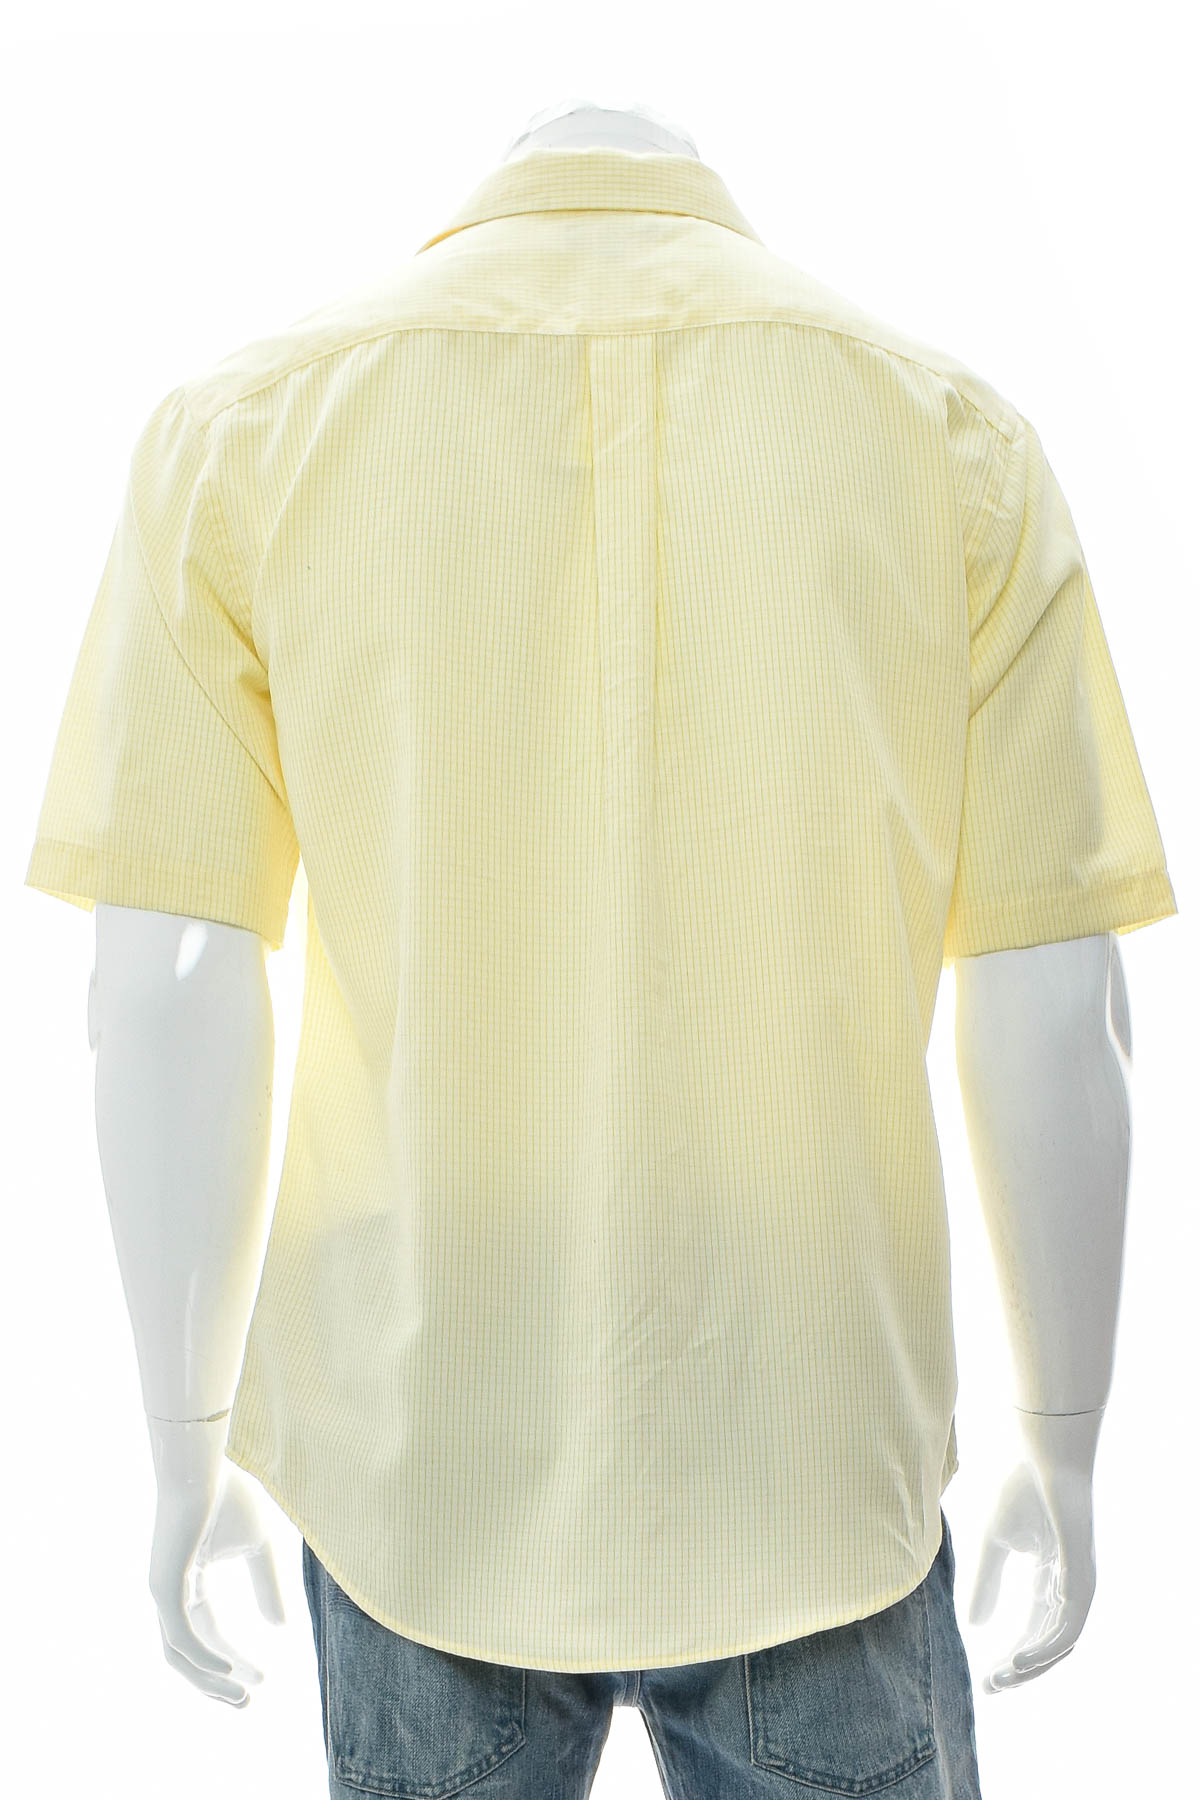 Ανδρικό πουκάμισο - Croft & Barrow - 1